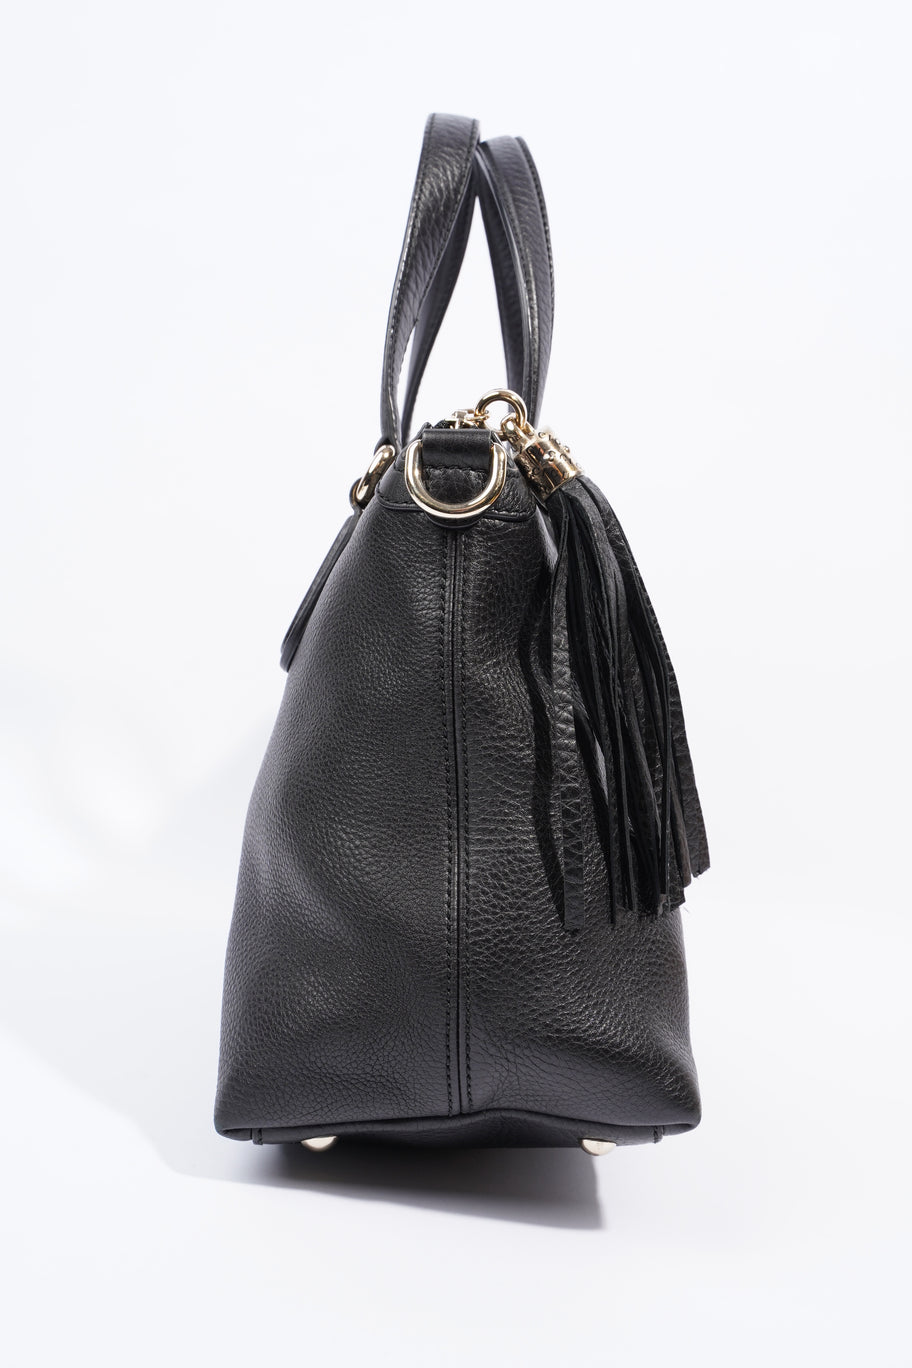 Soho 2Way Bag Black Leather Image 6